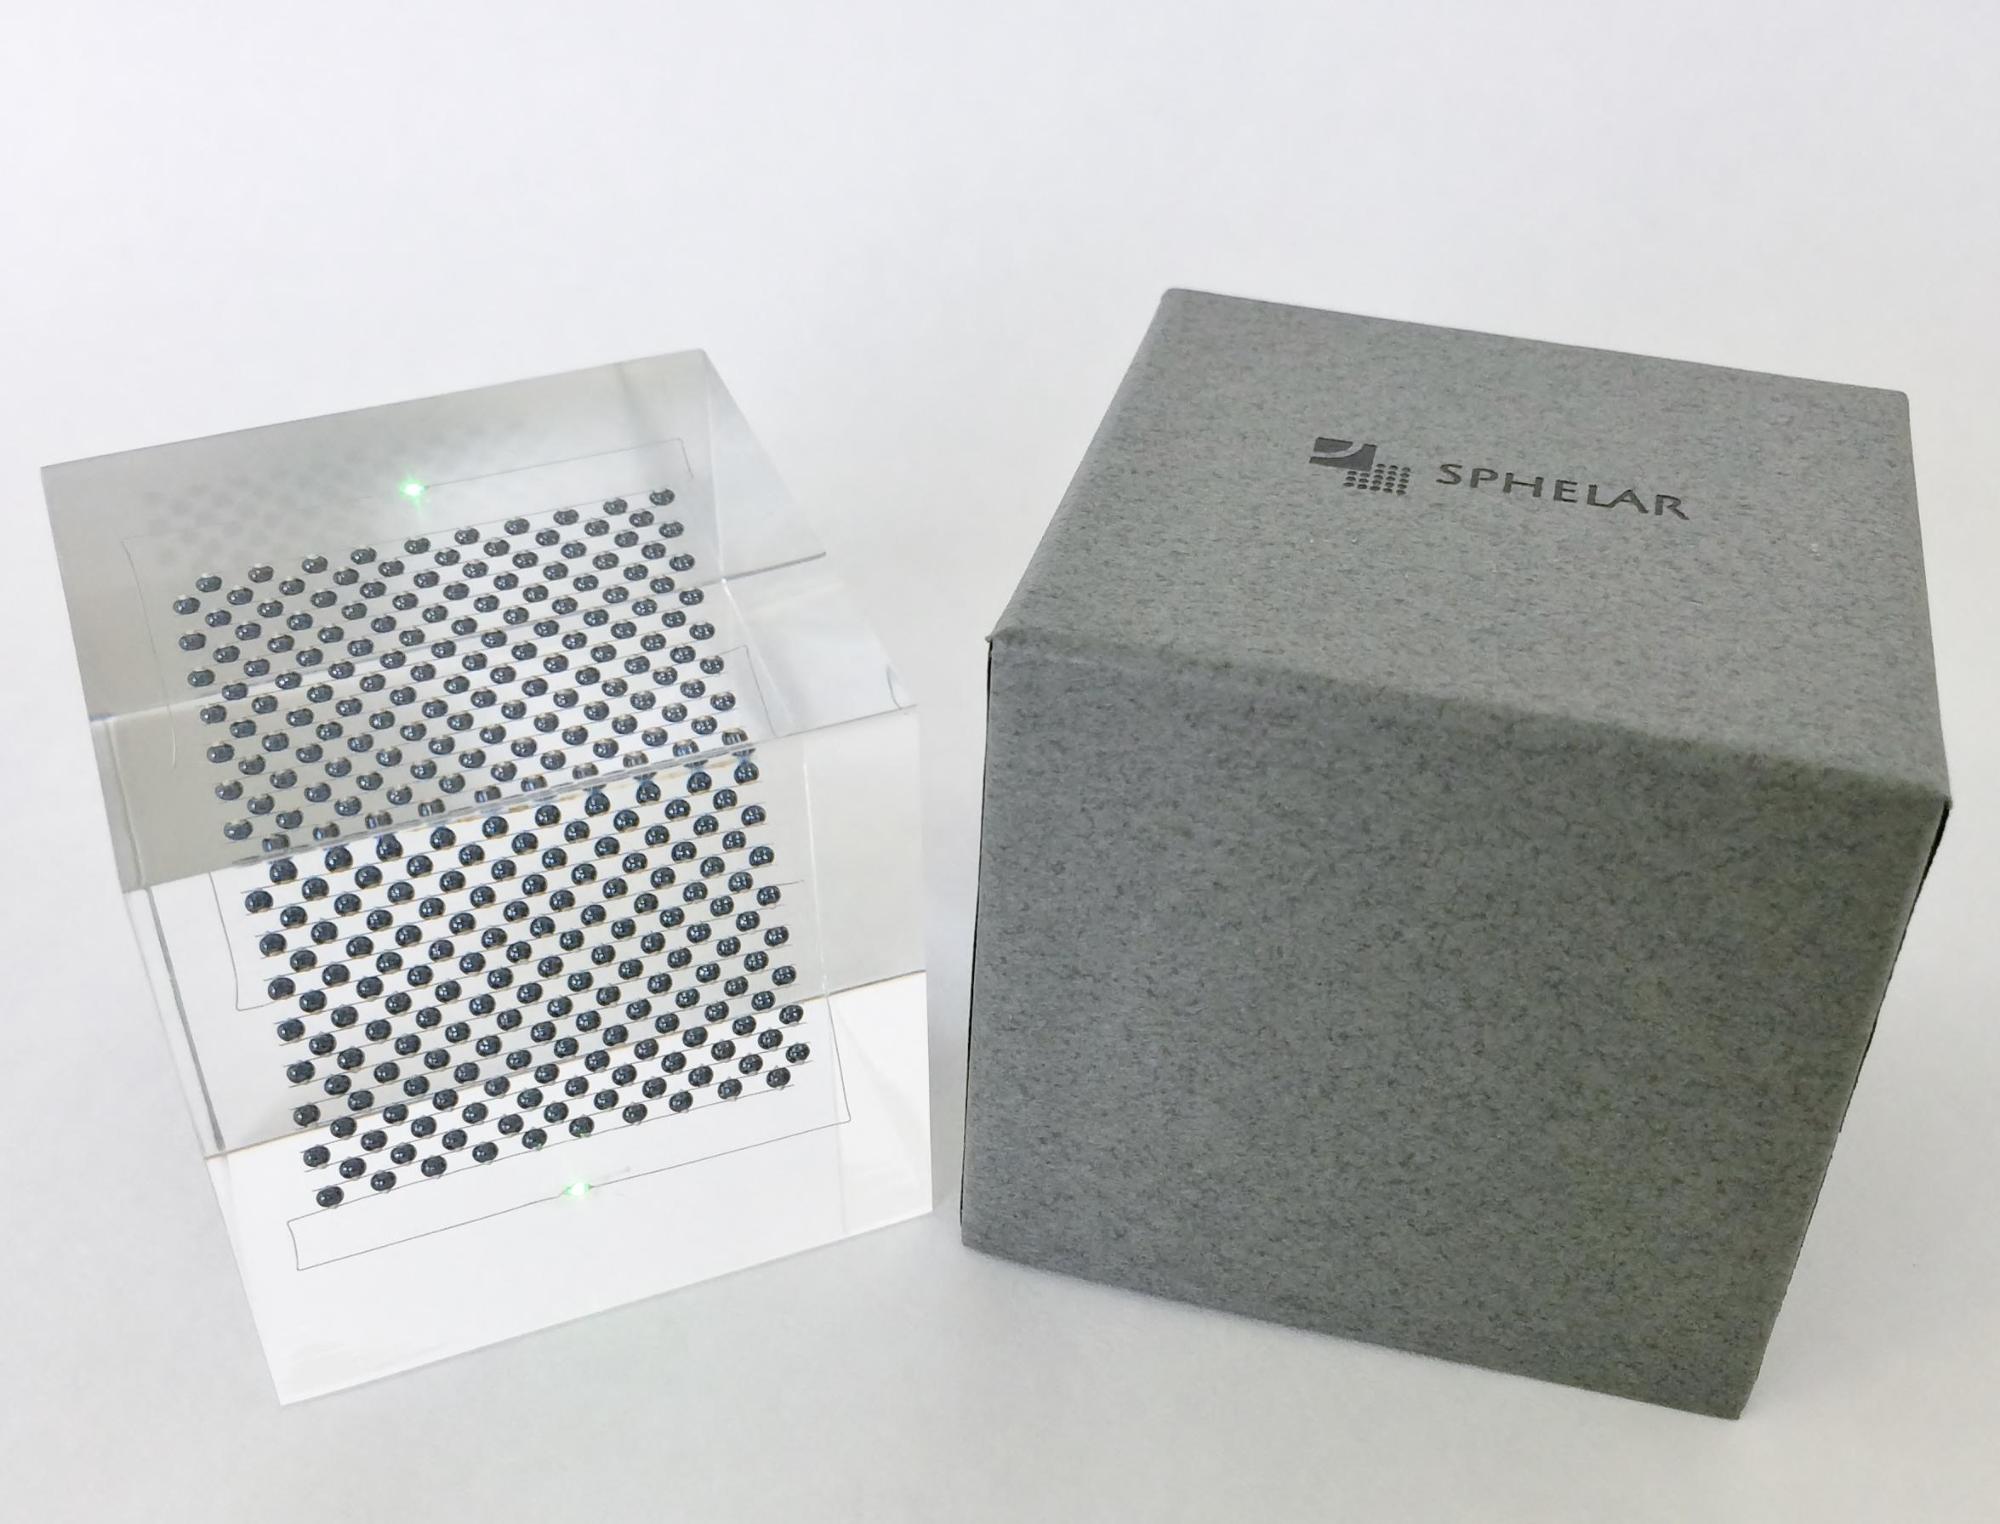 グレーの箱と箱から出されたスフェラーキューブの写真